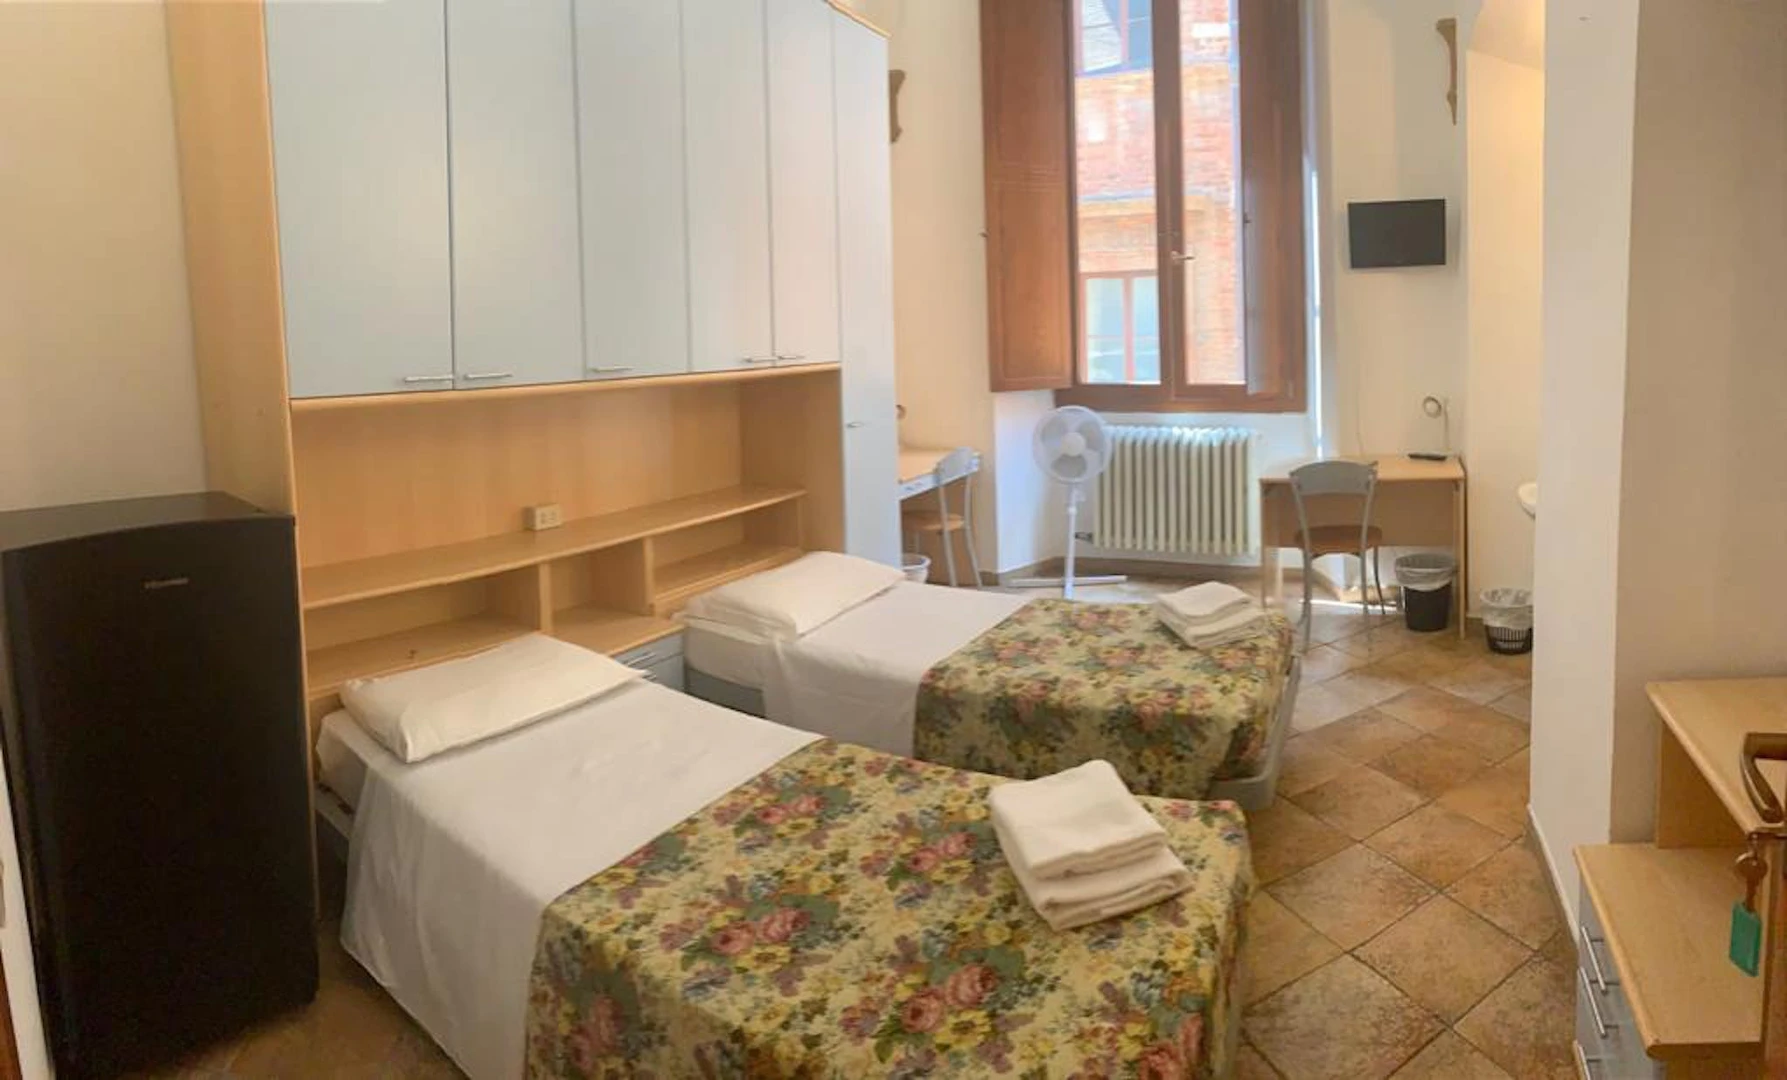 Habitación compartida con otro estudiante en Siena